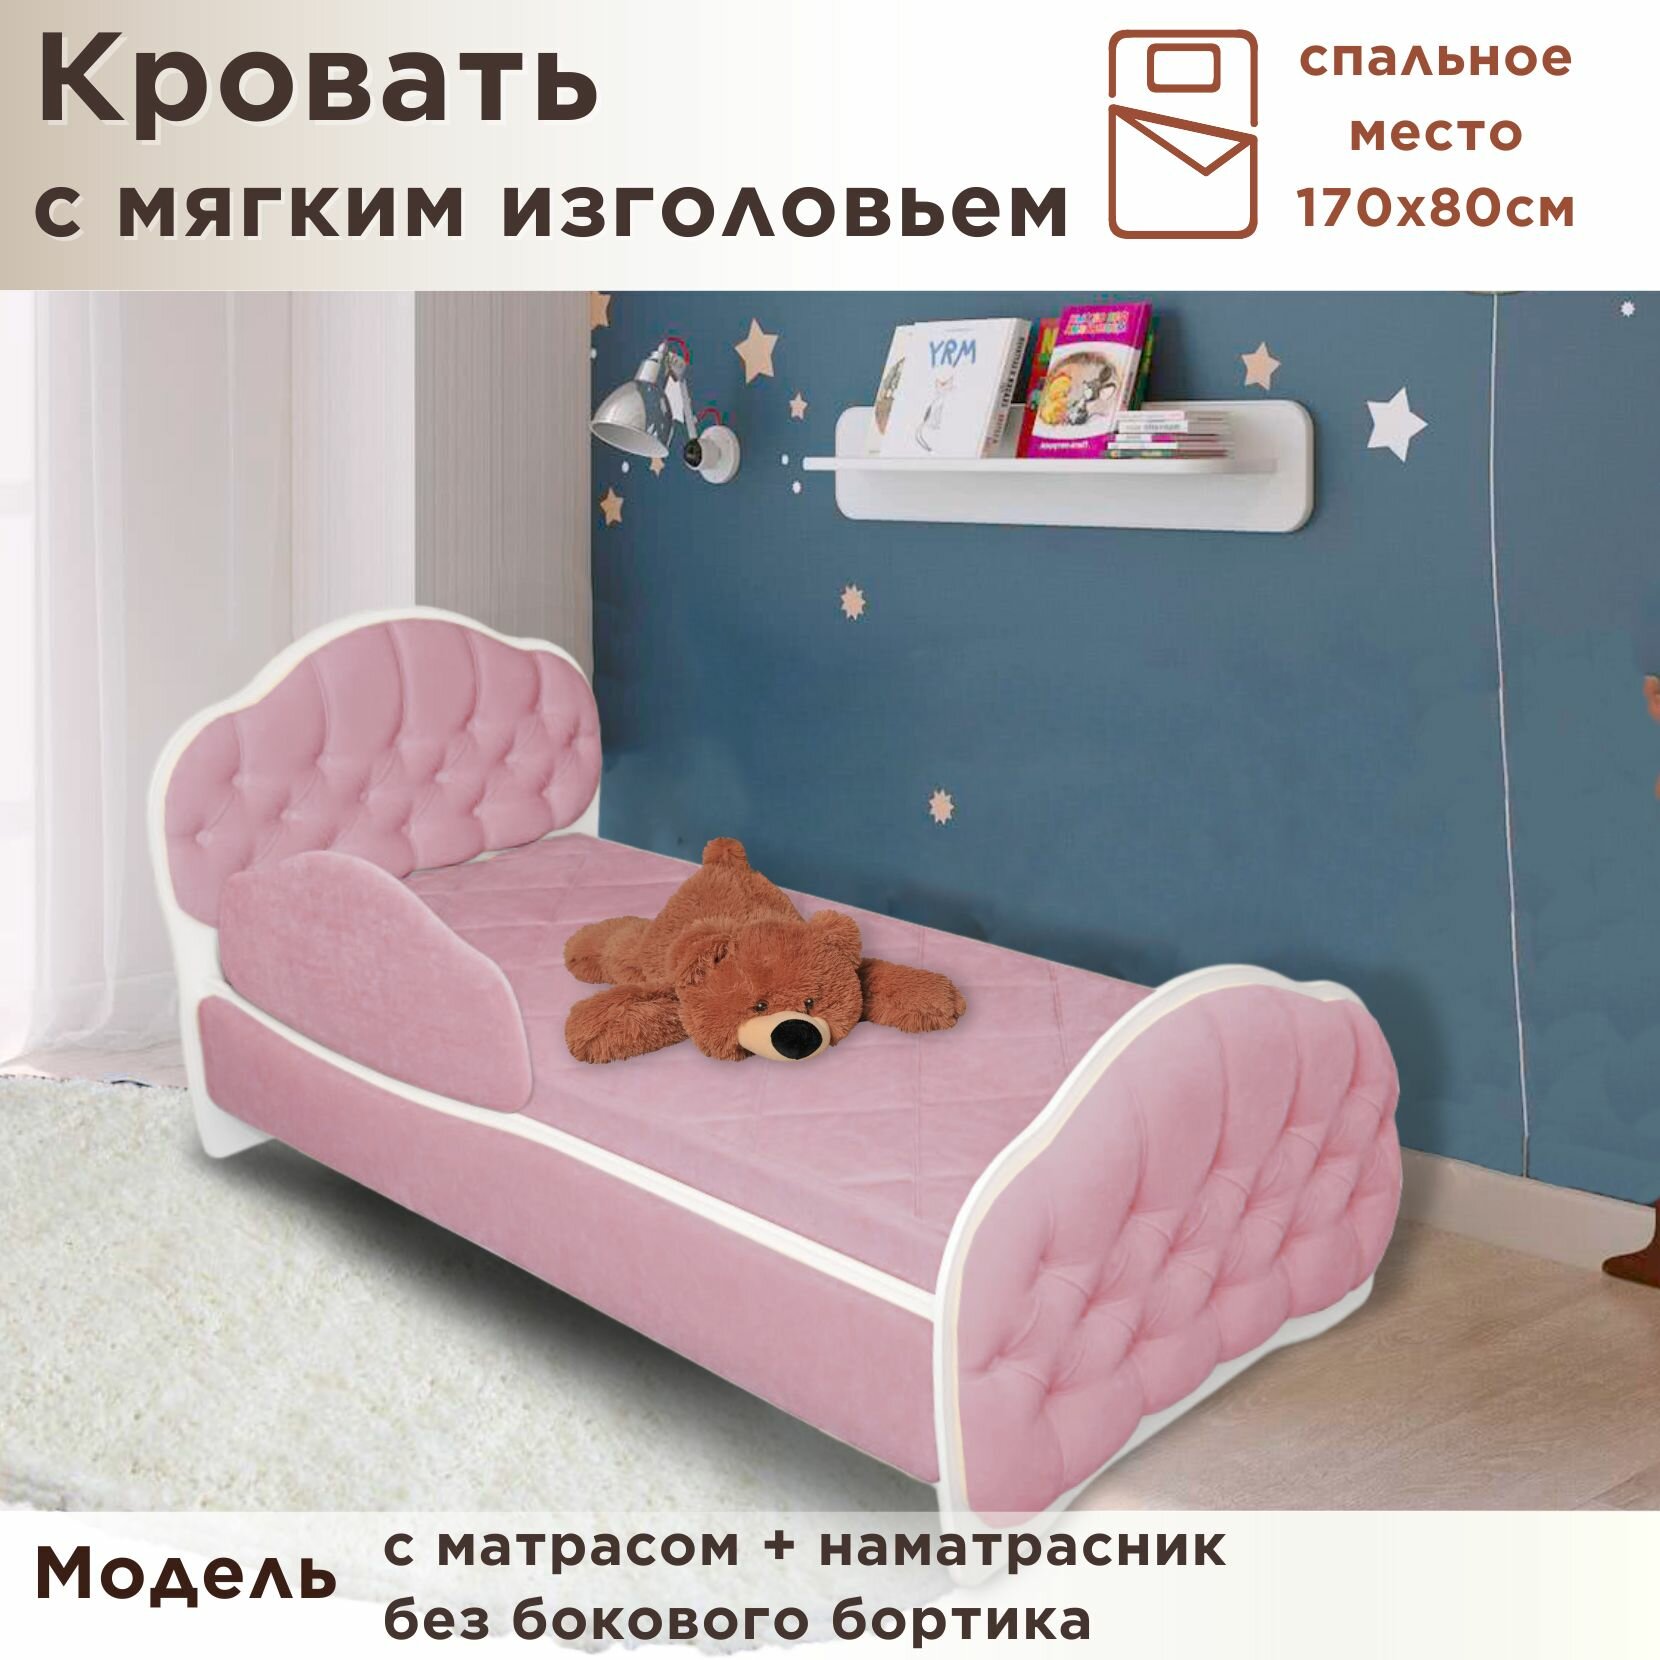 Кровать детская Гармония 170х80 см, Teddy 326, кровать + матрас + наматрасник